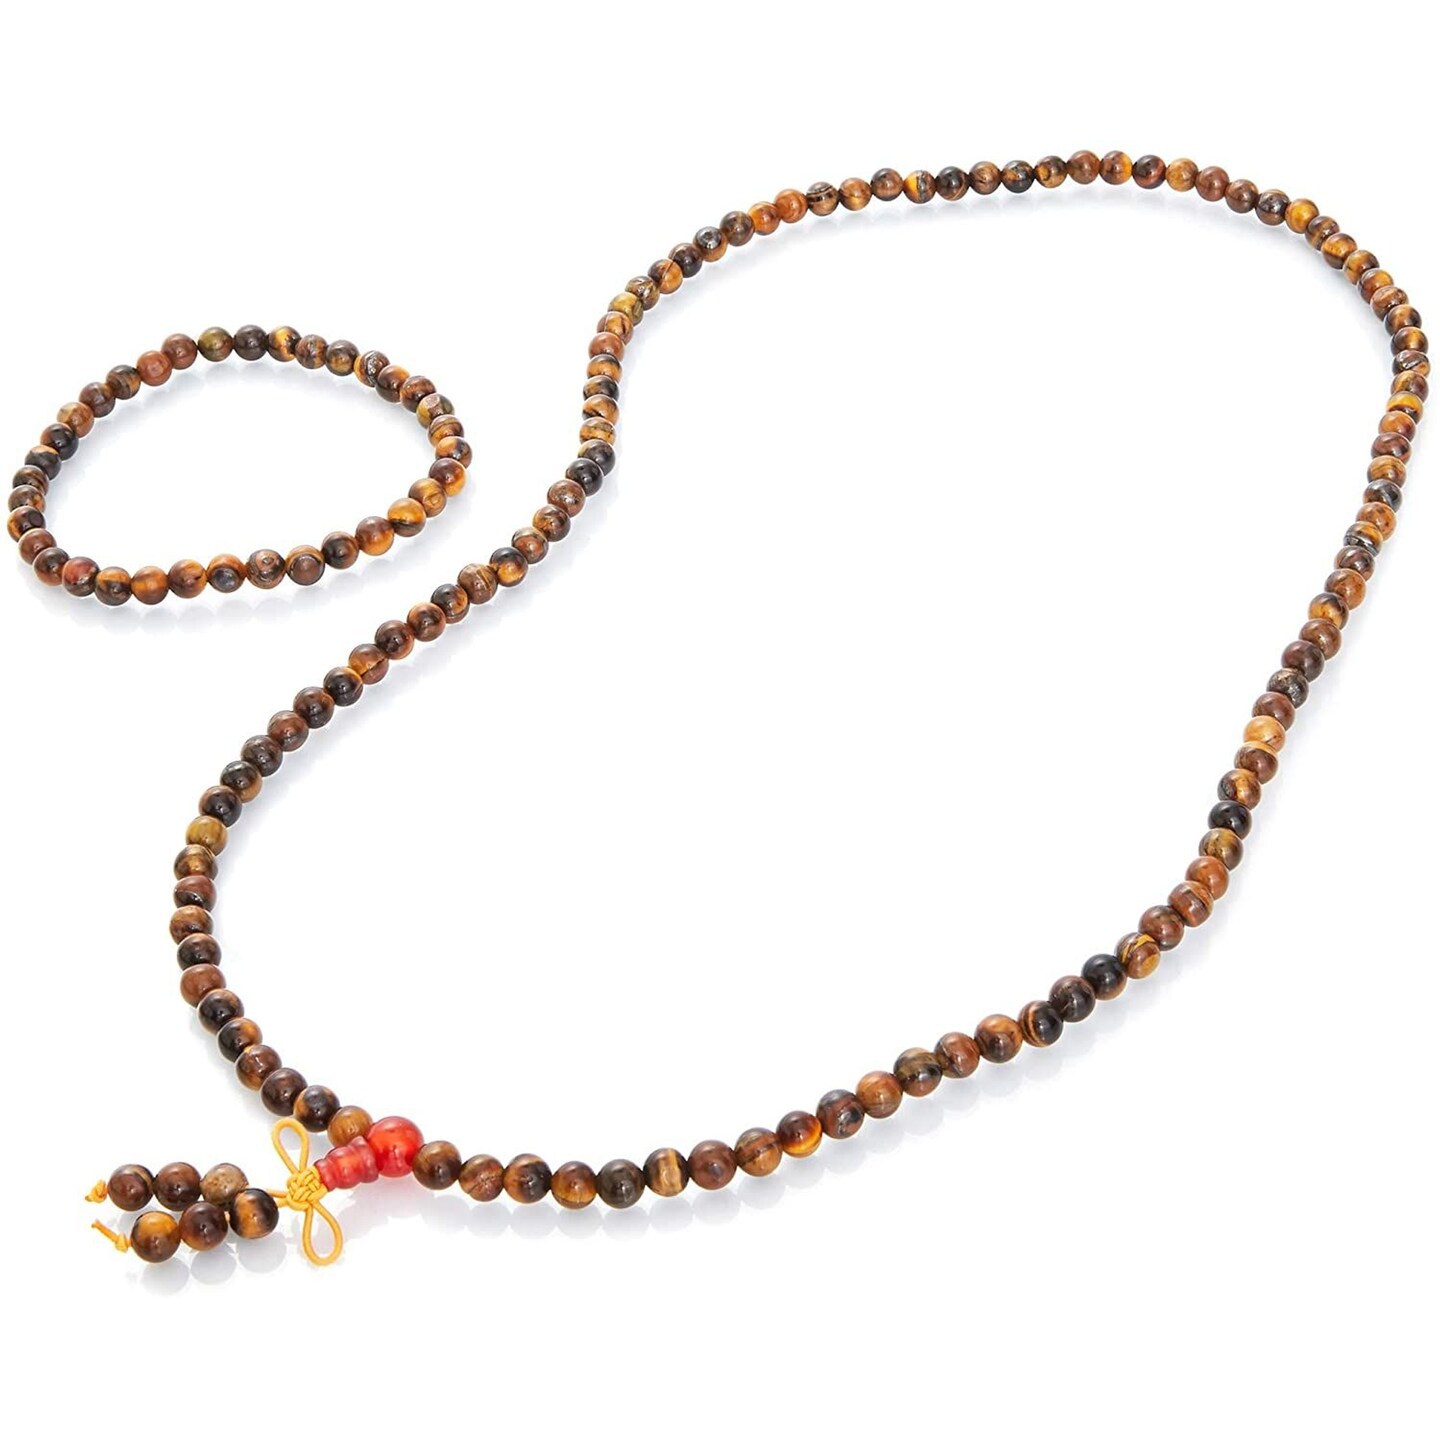 Tiger Eye Stone Bracelet and Necklace 2 Piece Set